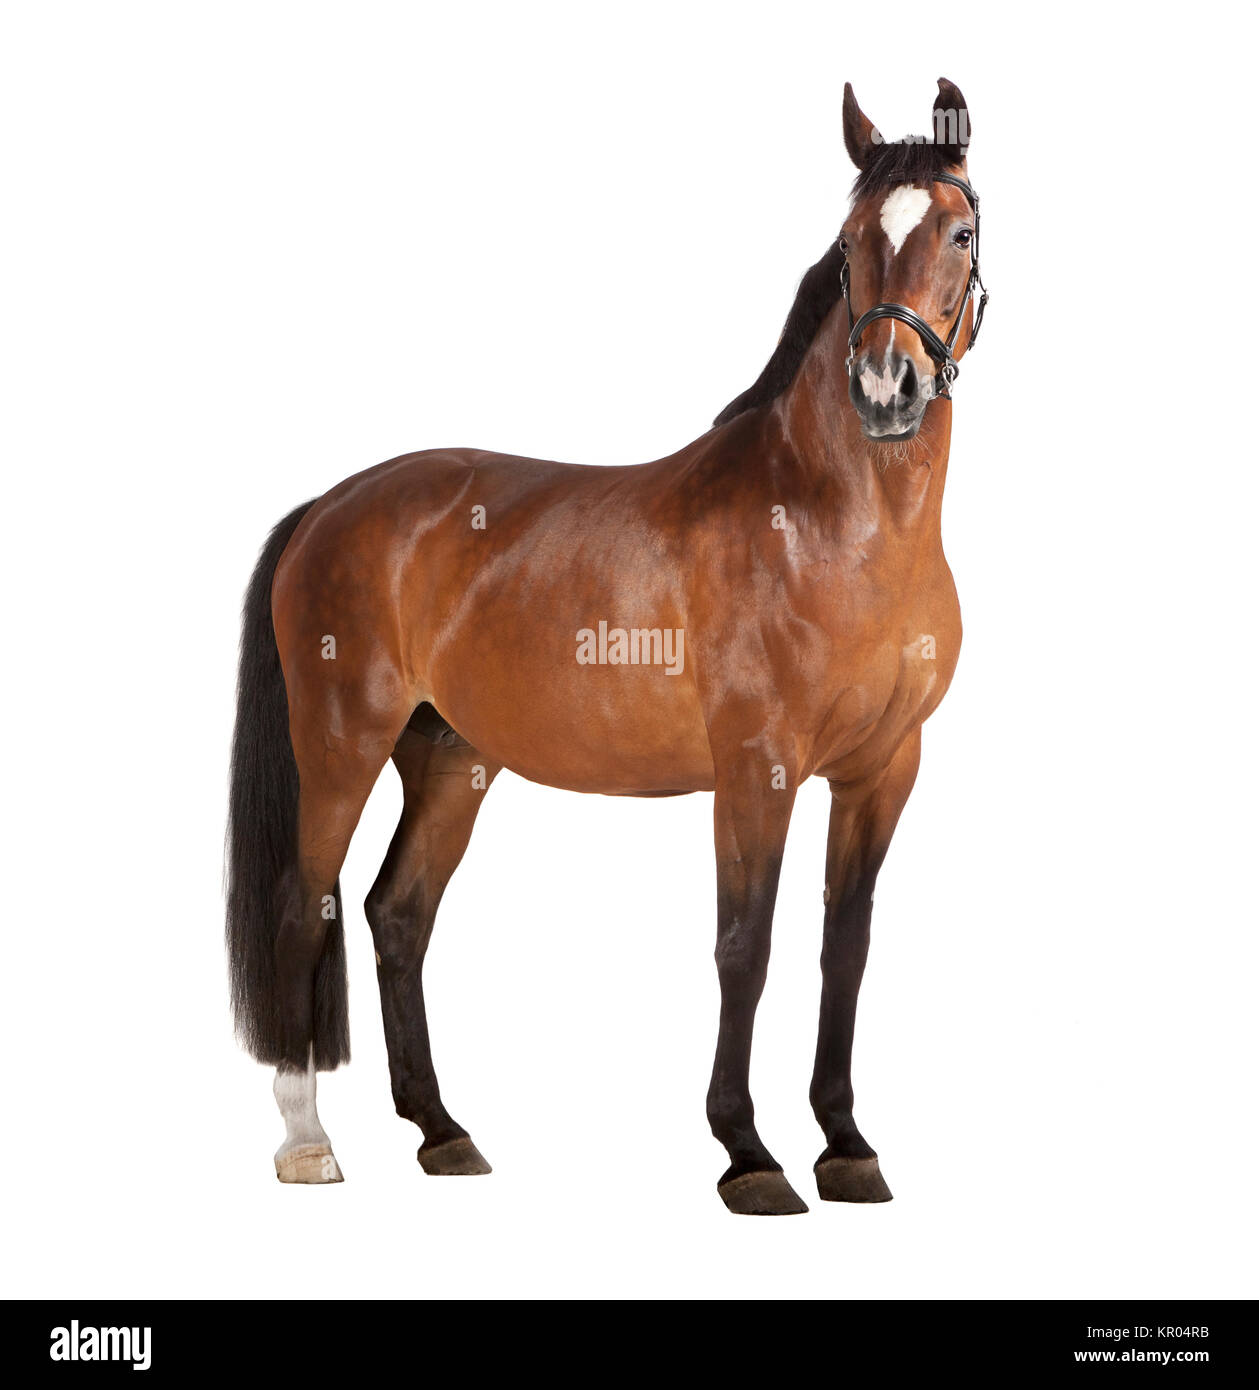 horse white background Stock Photo - Alamy